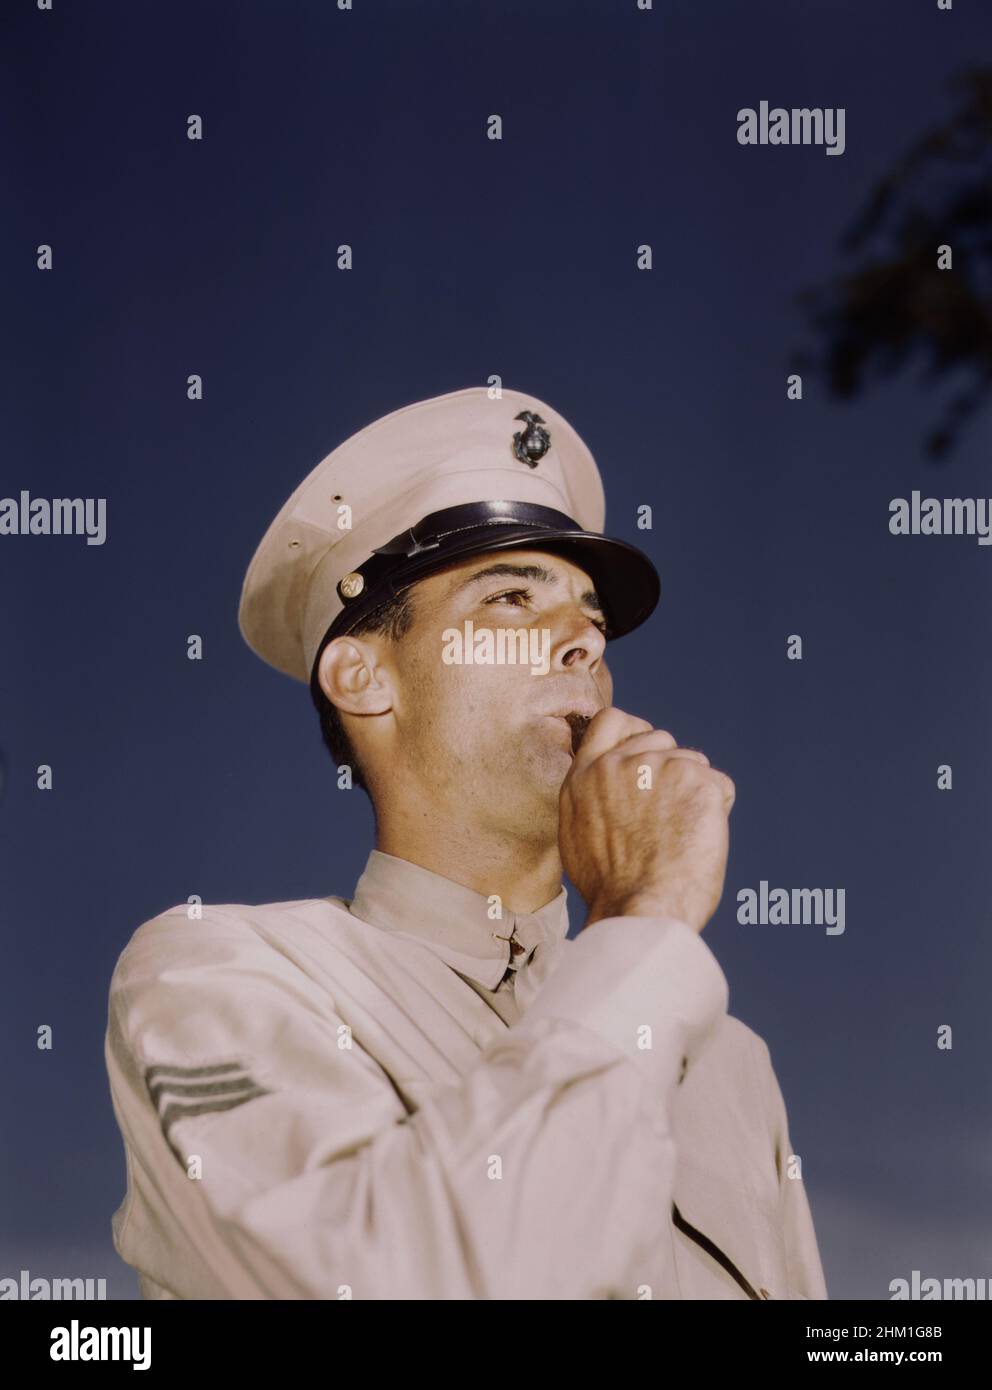 Sergente marina in uniforme militare, ritratto di testa e spalle, New Orleans, Louisiana, Stati Uniti, Howard R. Hollem, Ufficio delle informazioni di guerra degli Stati Uniti, 1941-1945 Foto Stock